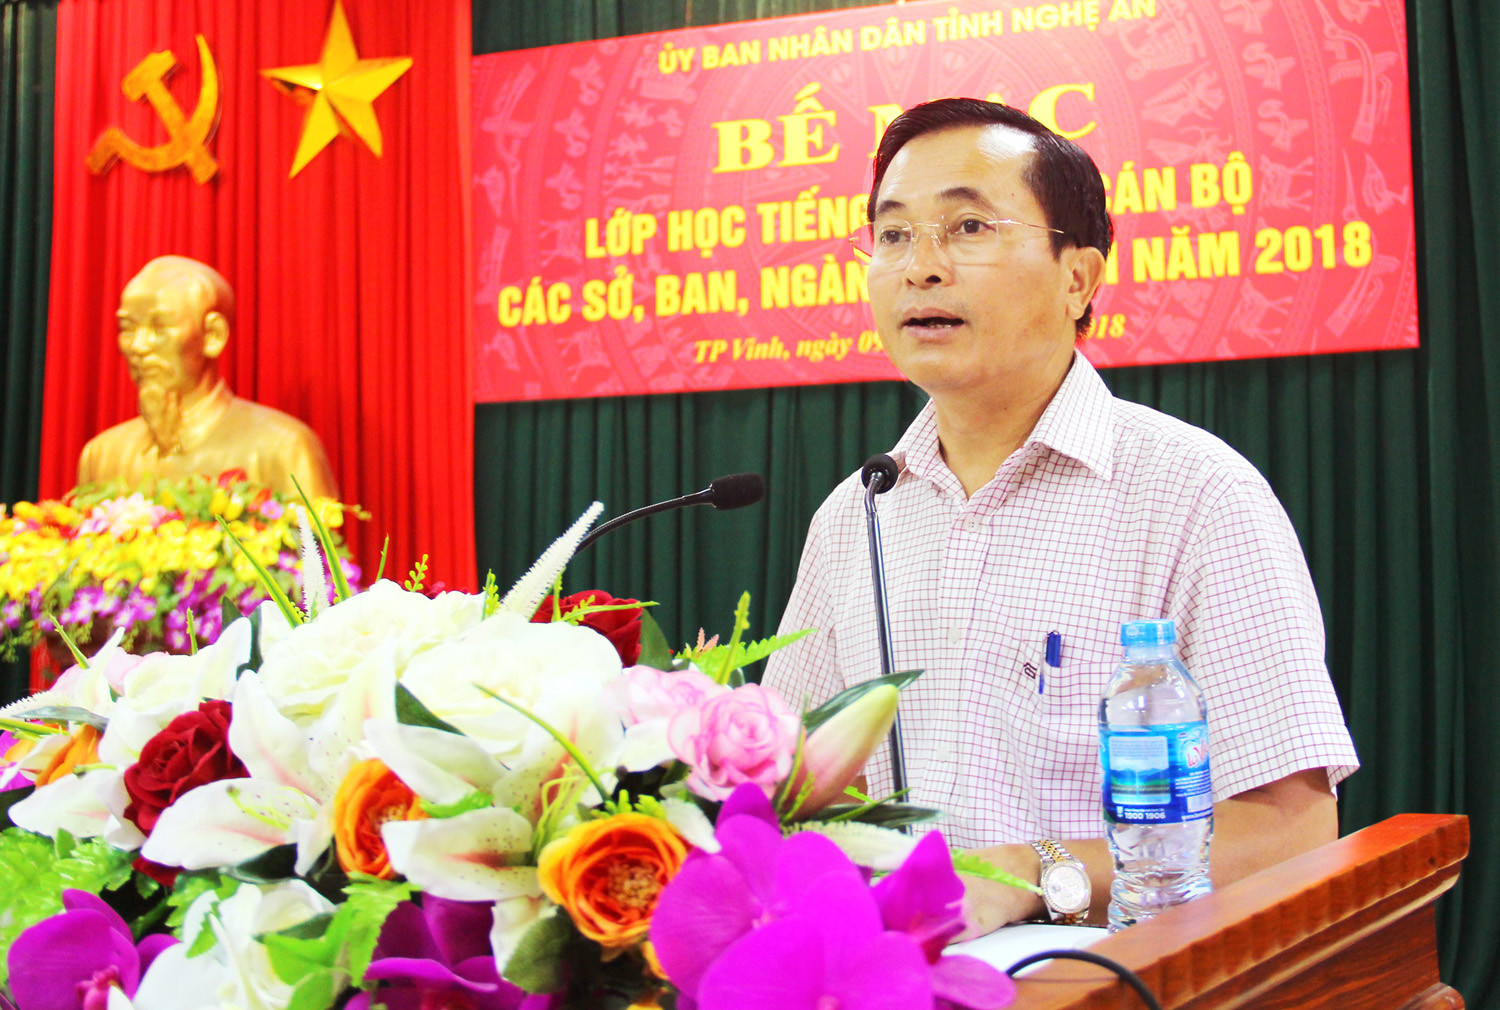 Đồng chí Lê Ngọc Hoa phát biểu tại buổi lễ